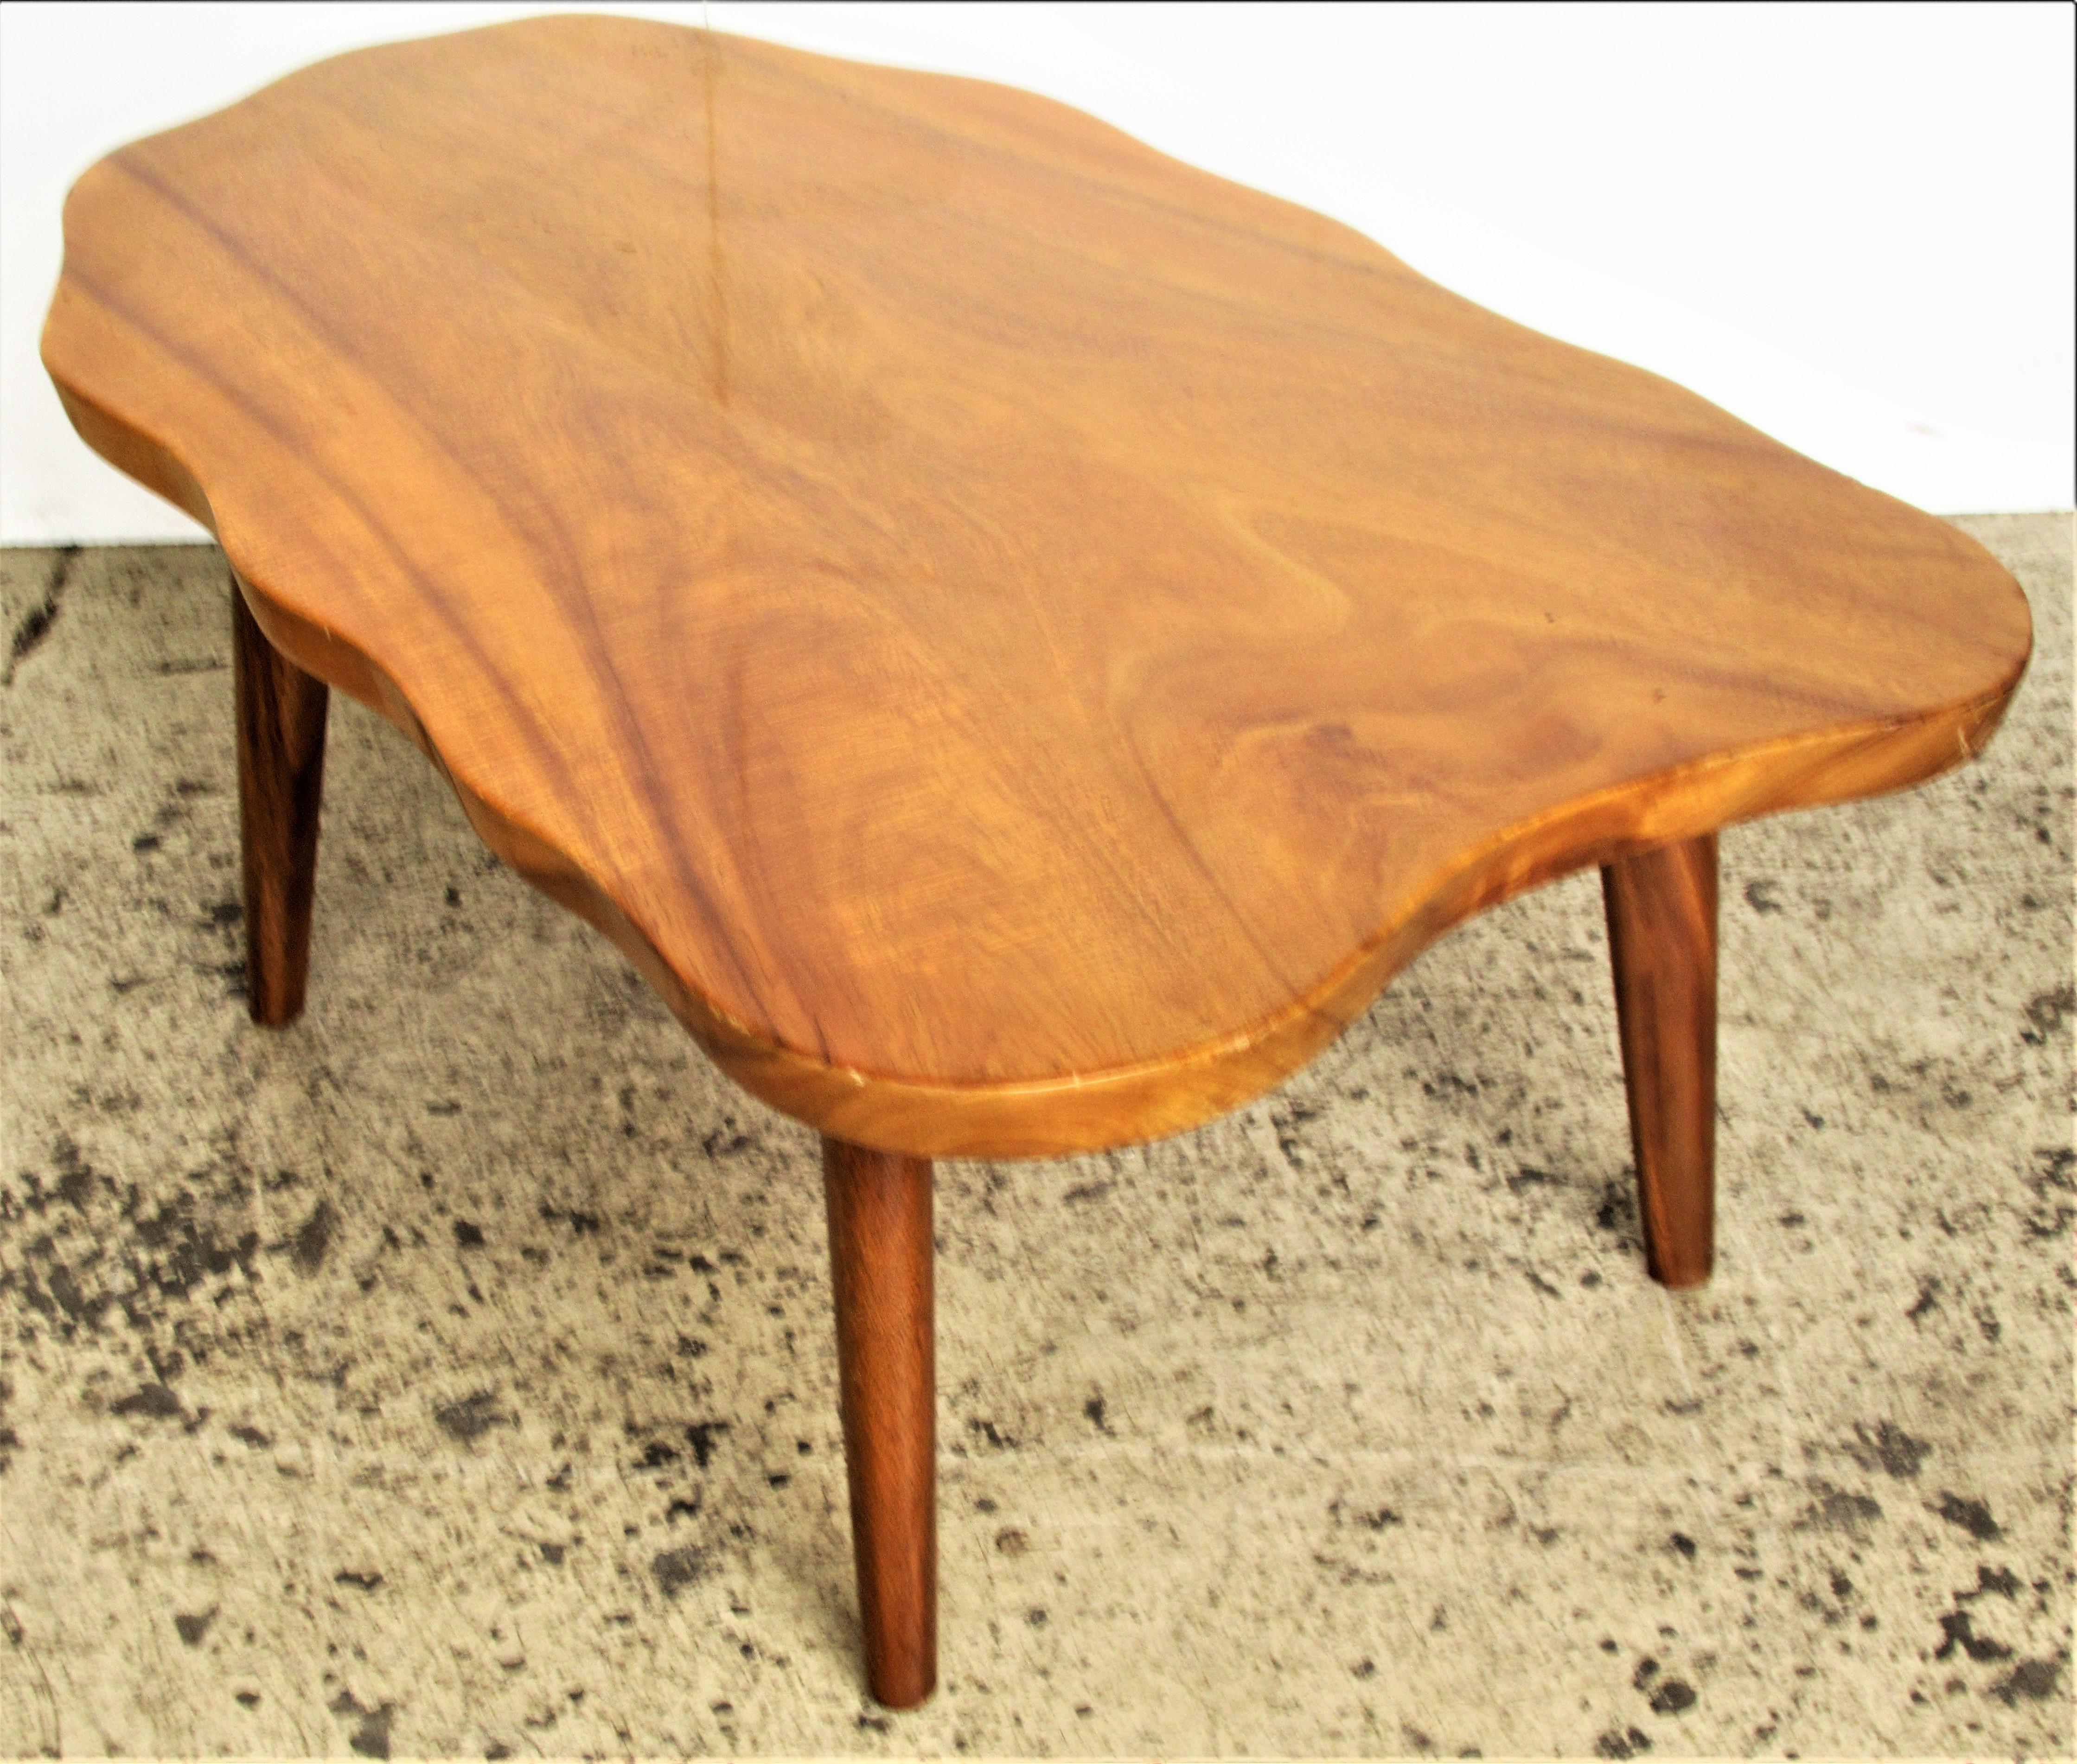  Organic Modern Hawaiian Monkey Pod Wood Table 1